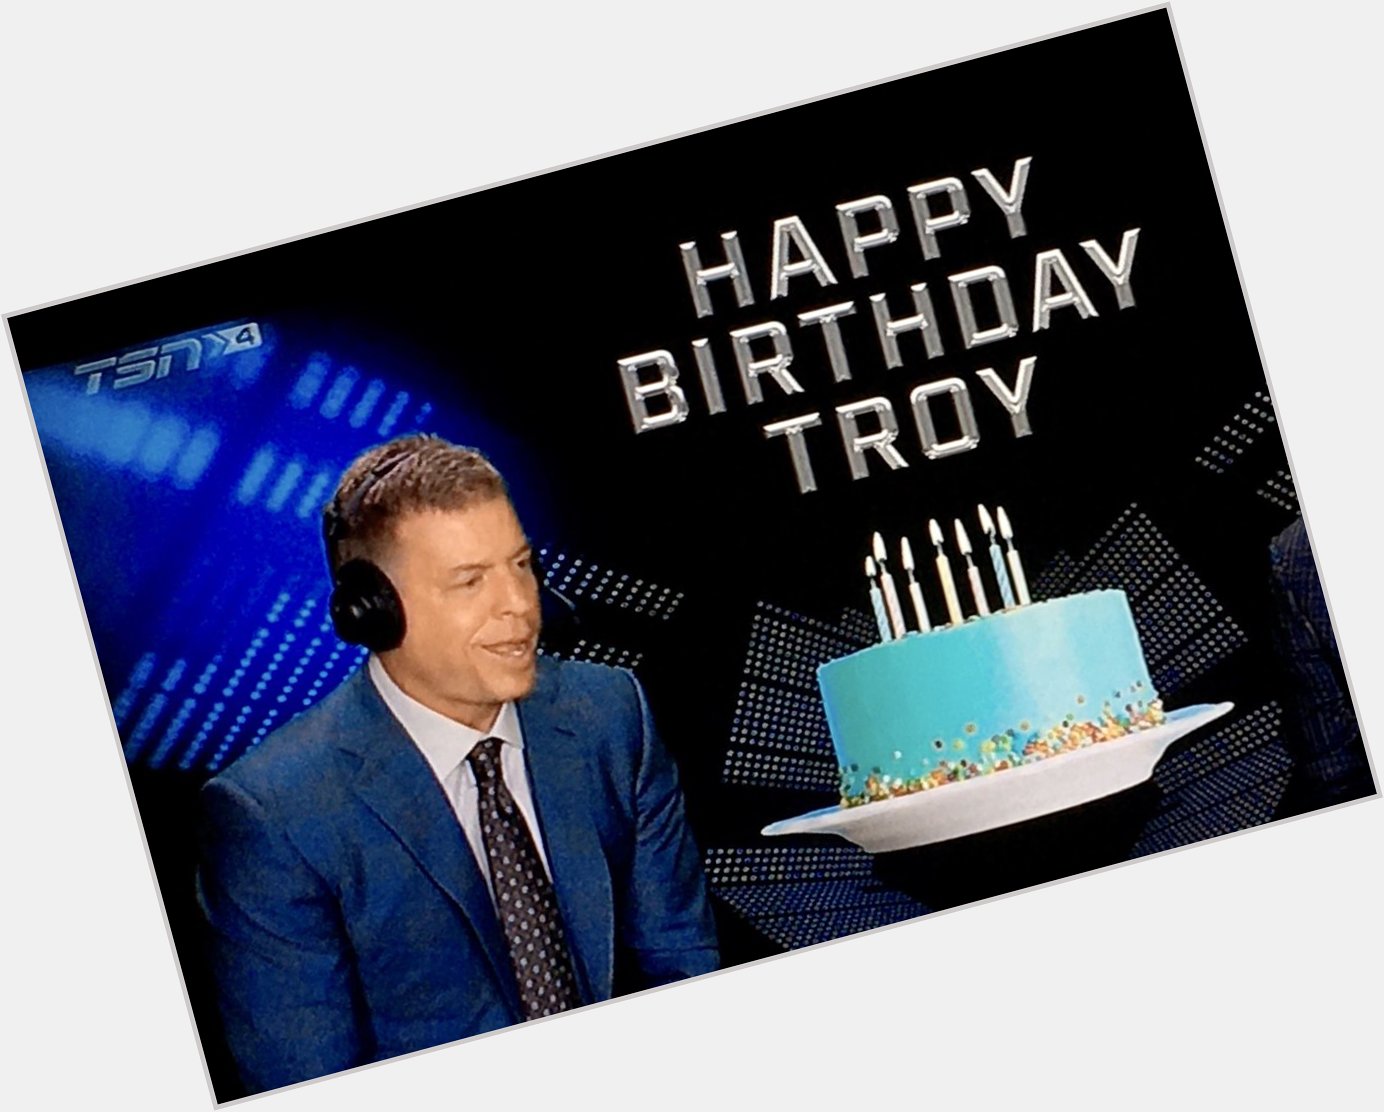 Happy Birthday Troy Aikman.       